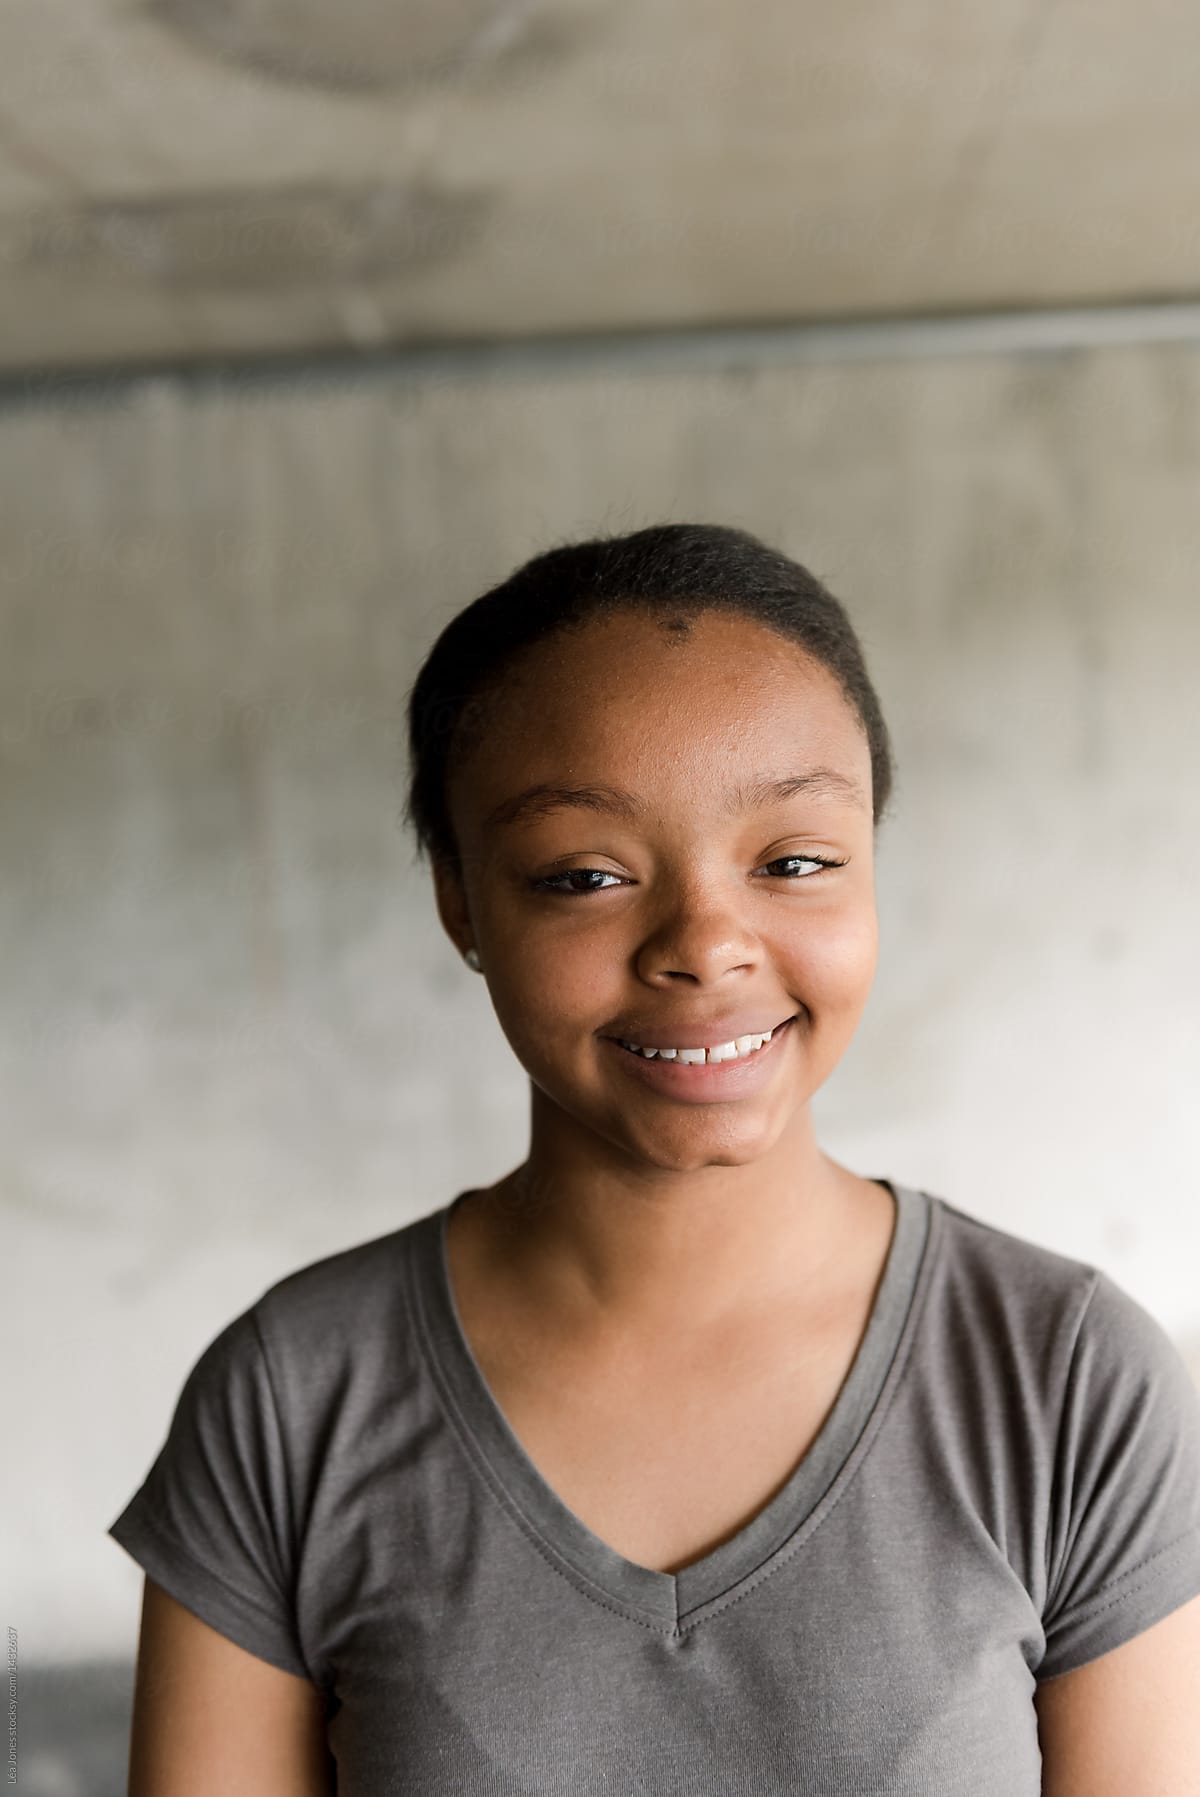 Portrait Of Happy Black Teen Girl by Stocksy Contributor Lea Jones -  Stocksy